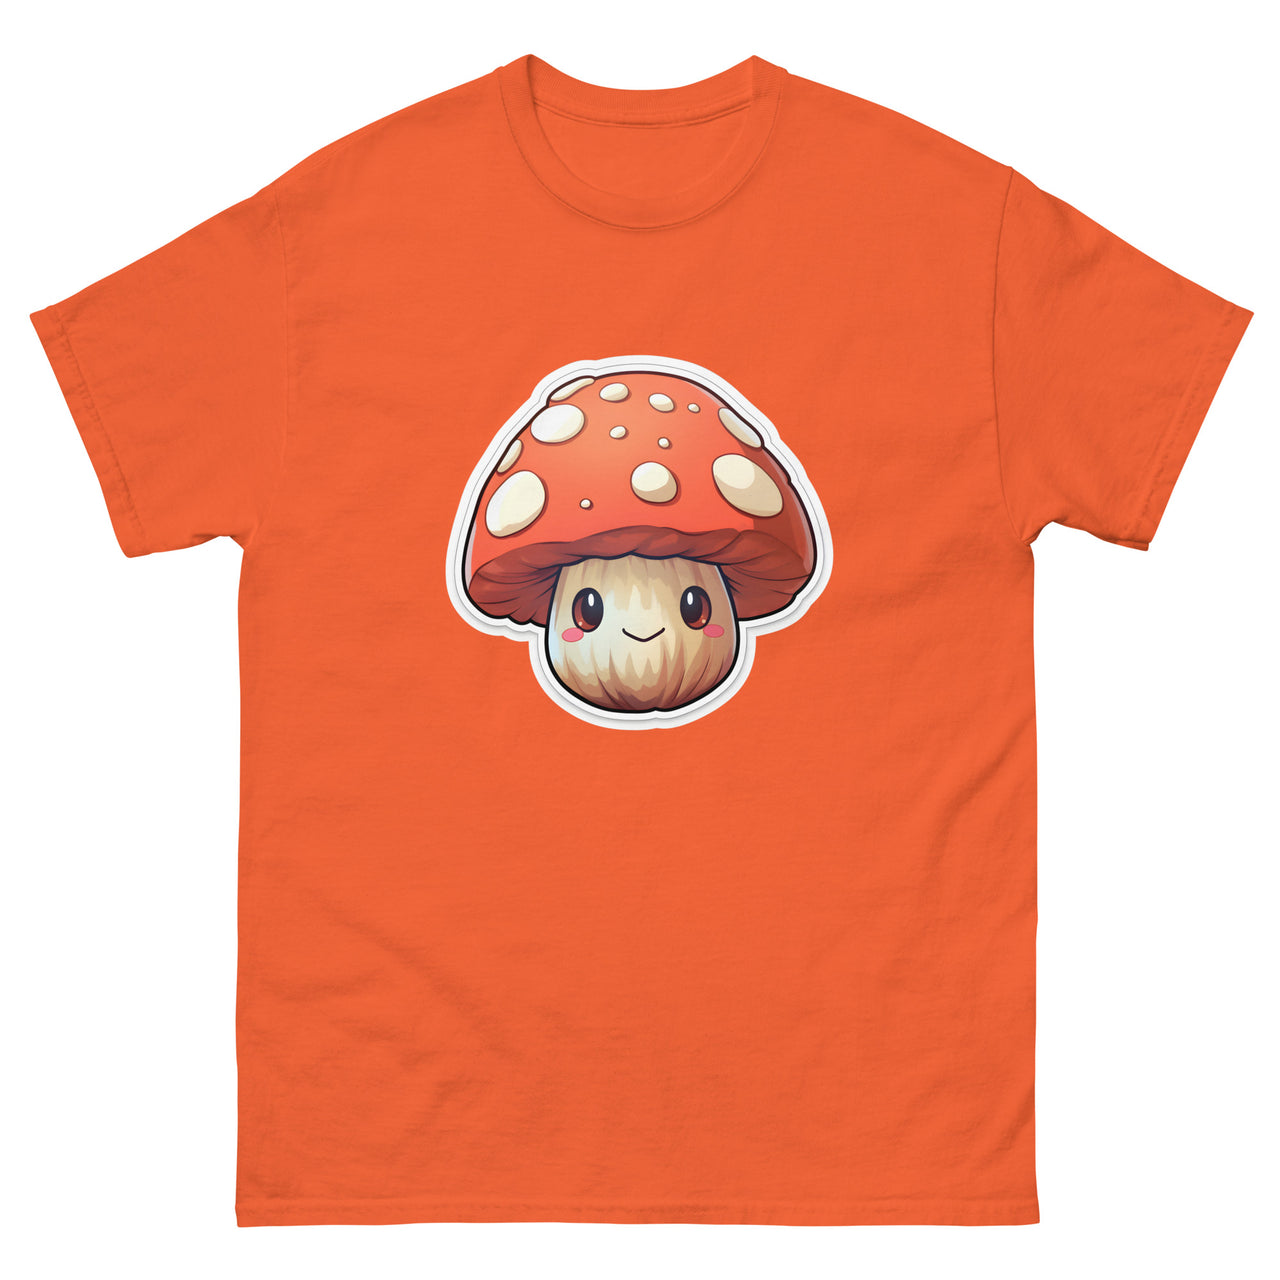 Smiling Anime Mushroom T-Shirt